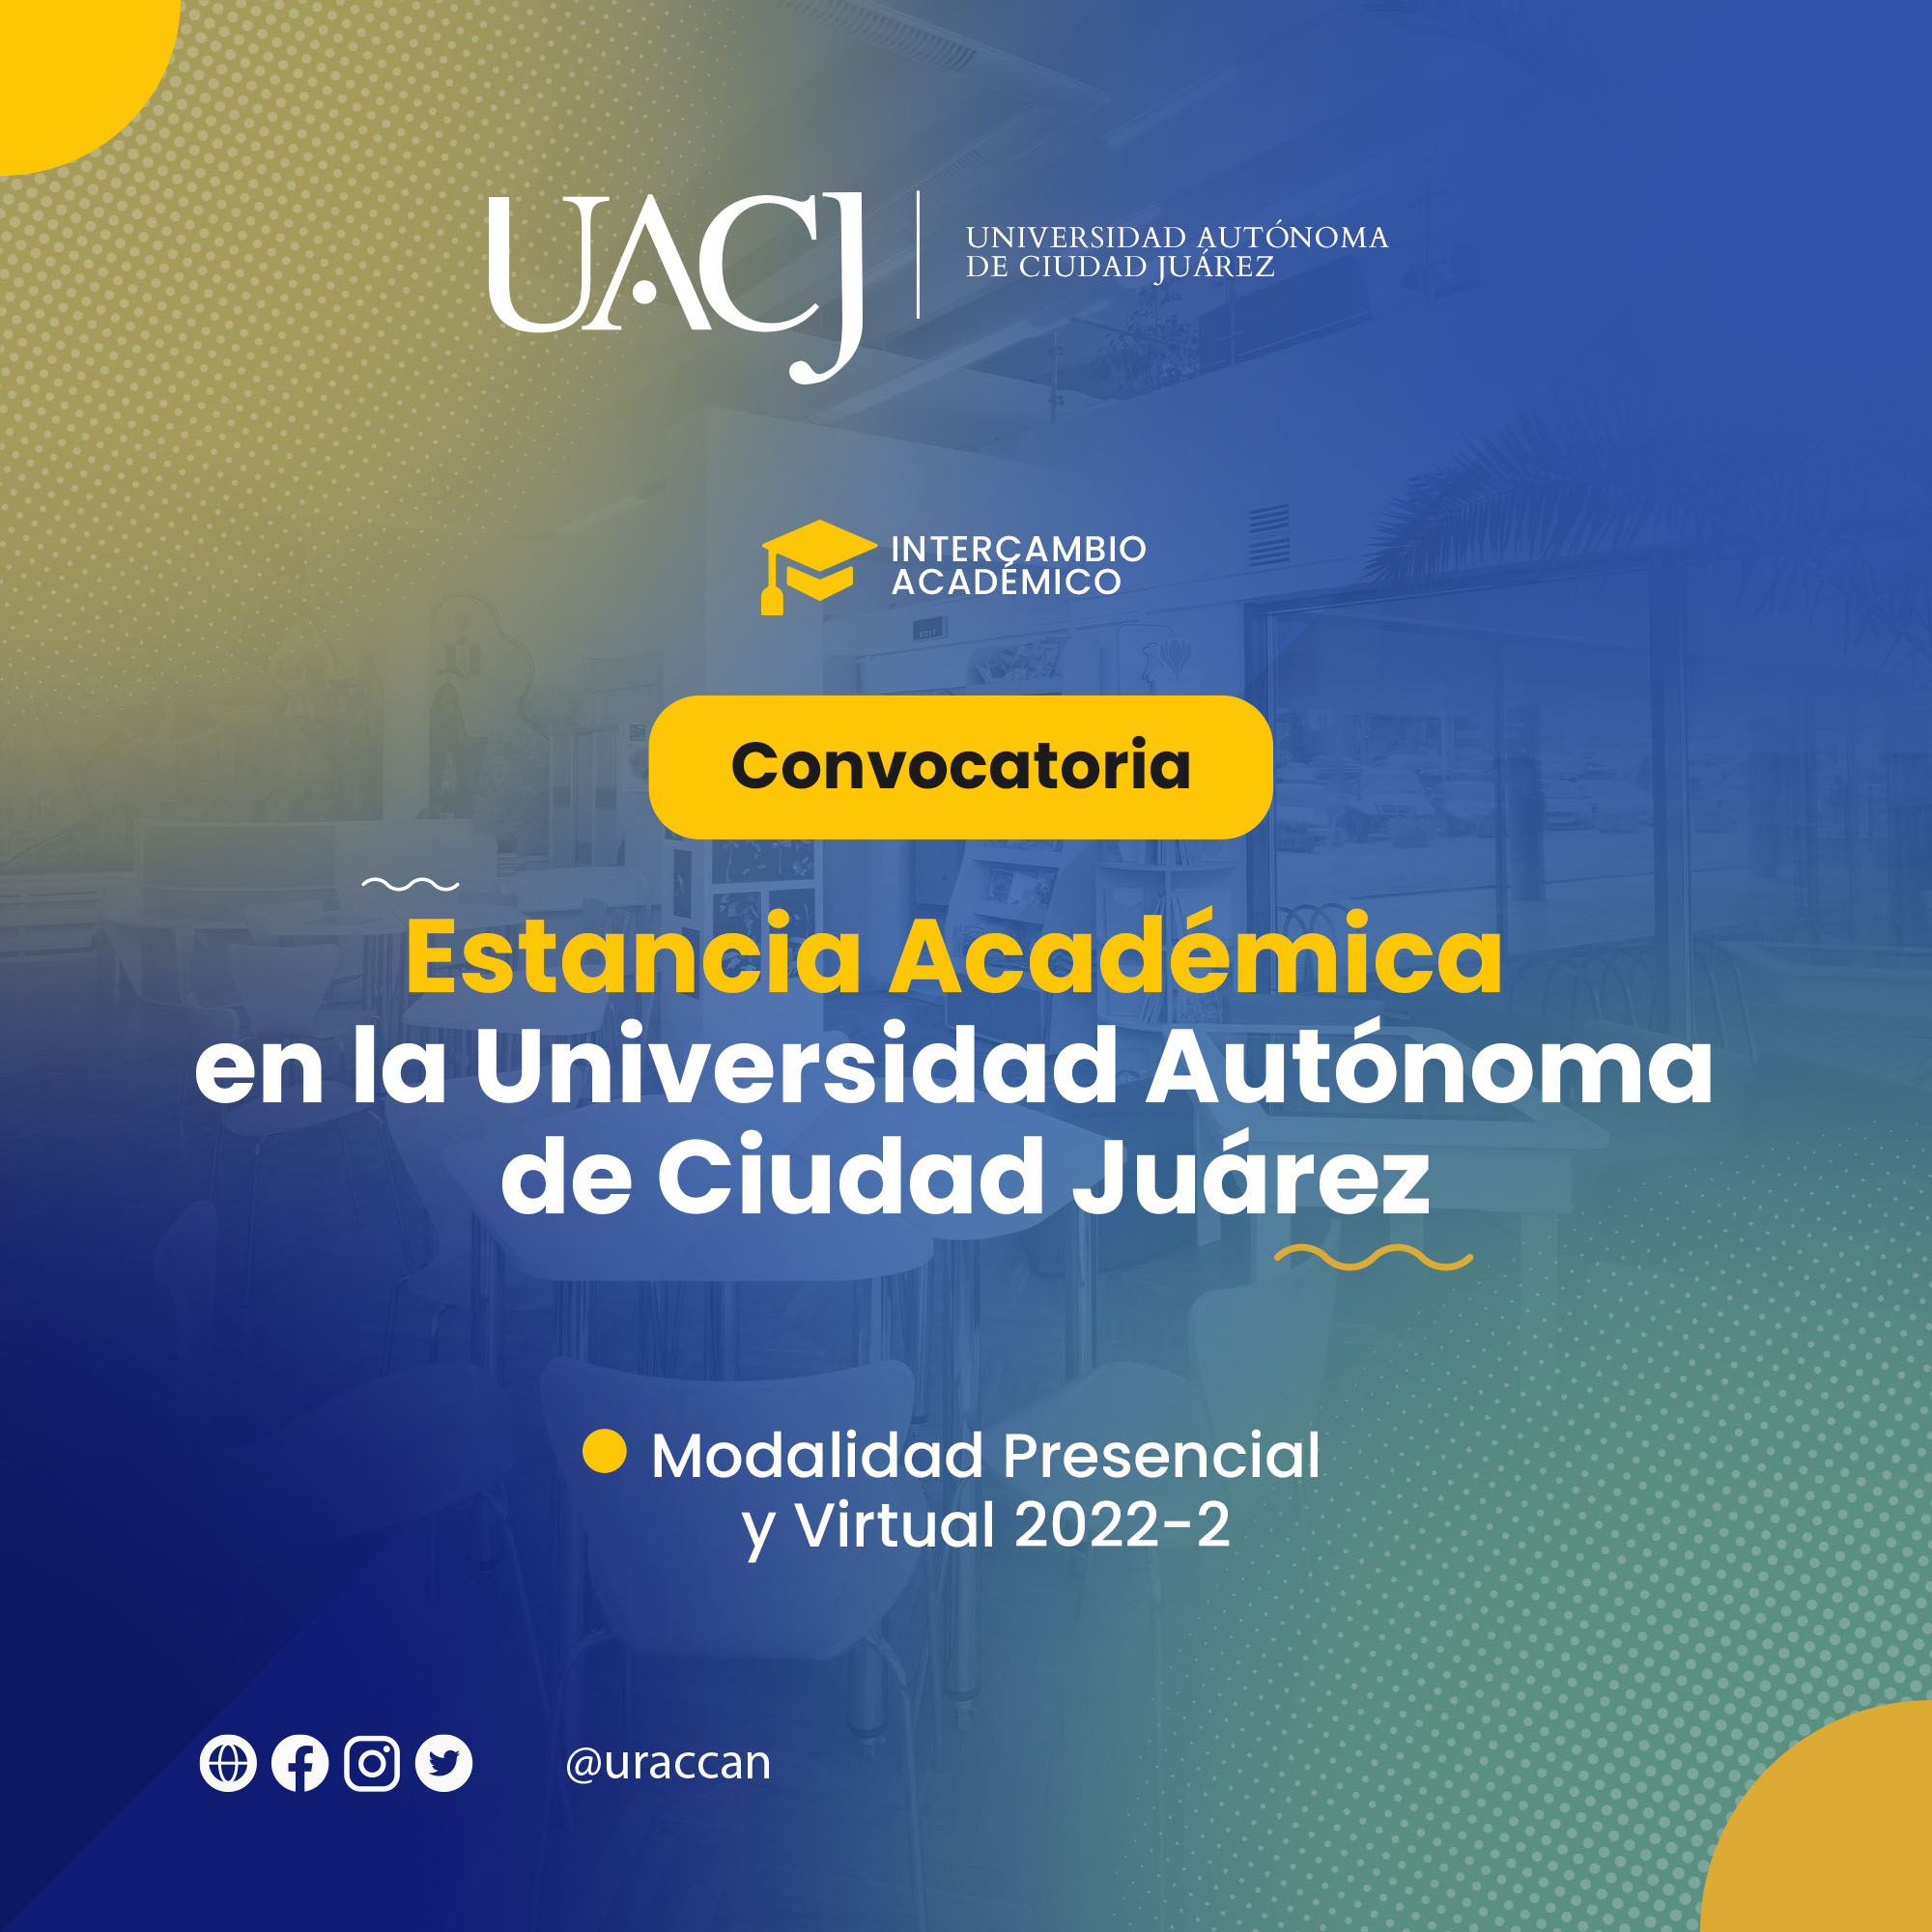 Convocatoria de Estancia Académica en la Universidad Autónoma de Ciudad Juárez Modalidad Presencial y Virtual 2022-2